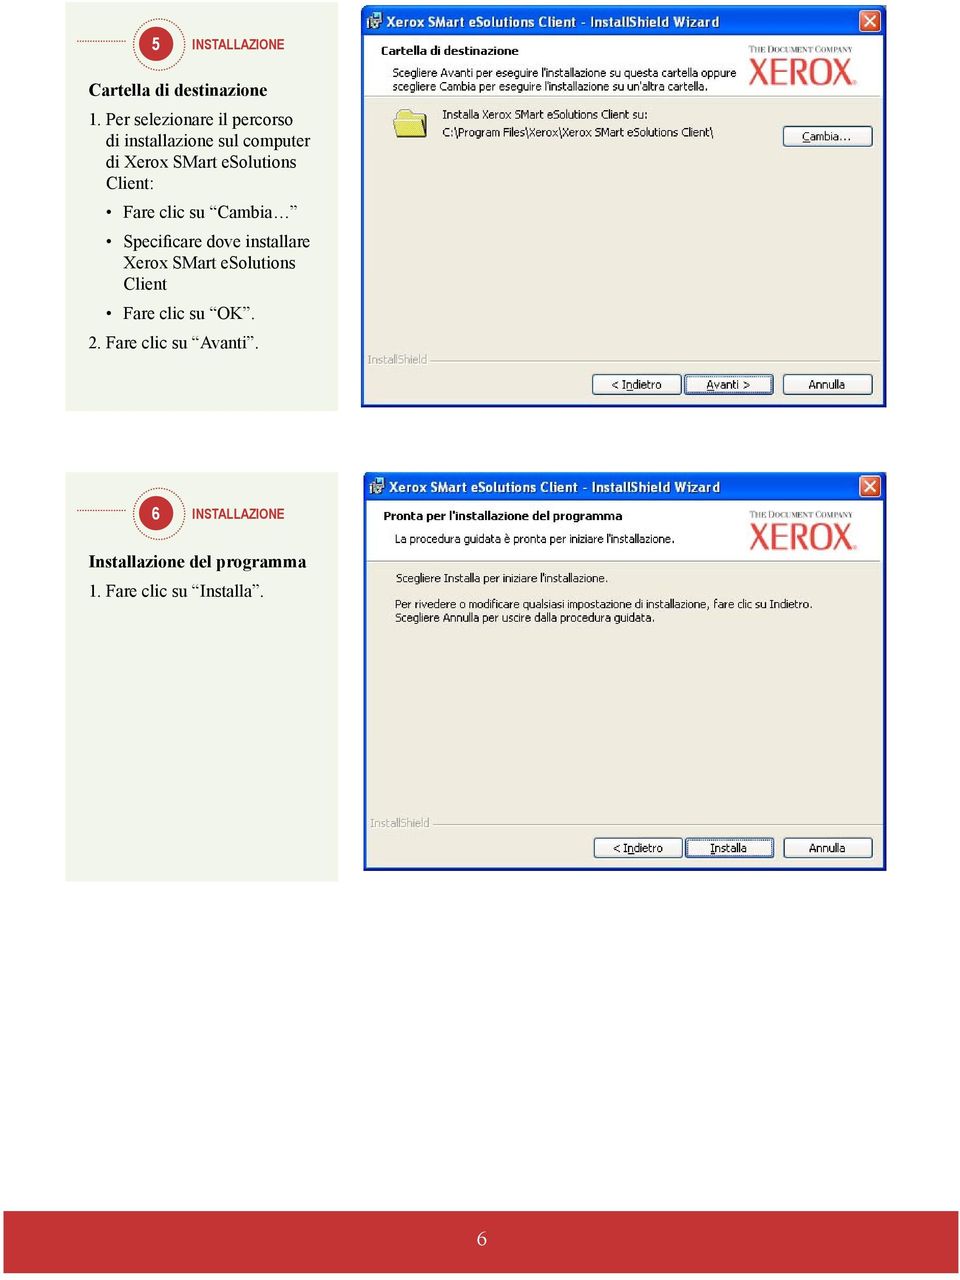 esolutions Client: Fare clic su Cambia Specificare dove installare Xerox SMart